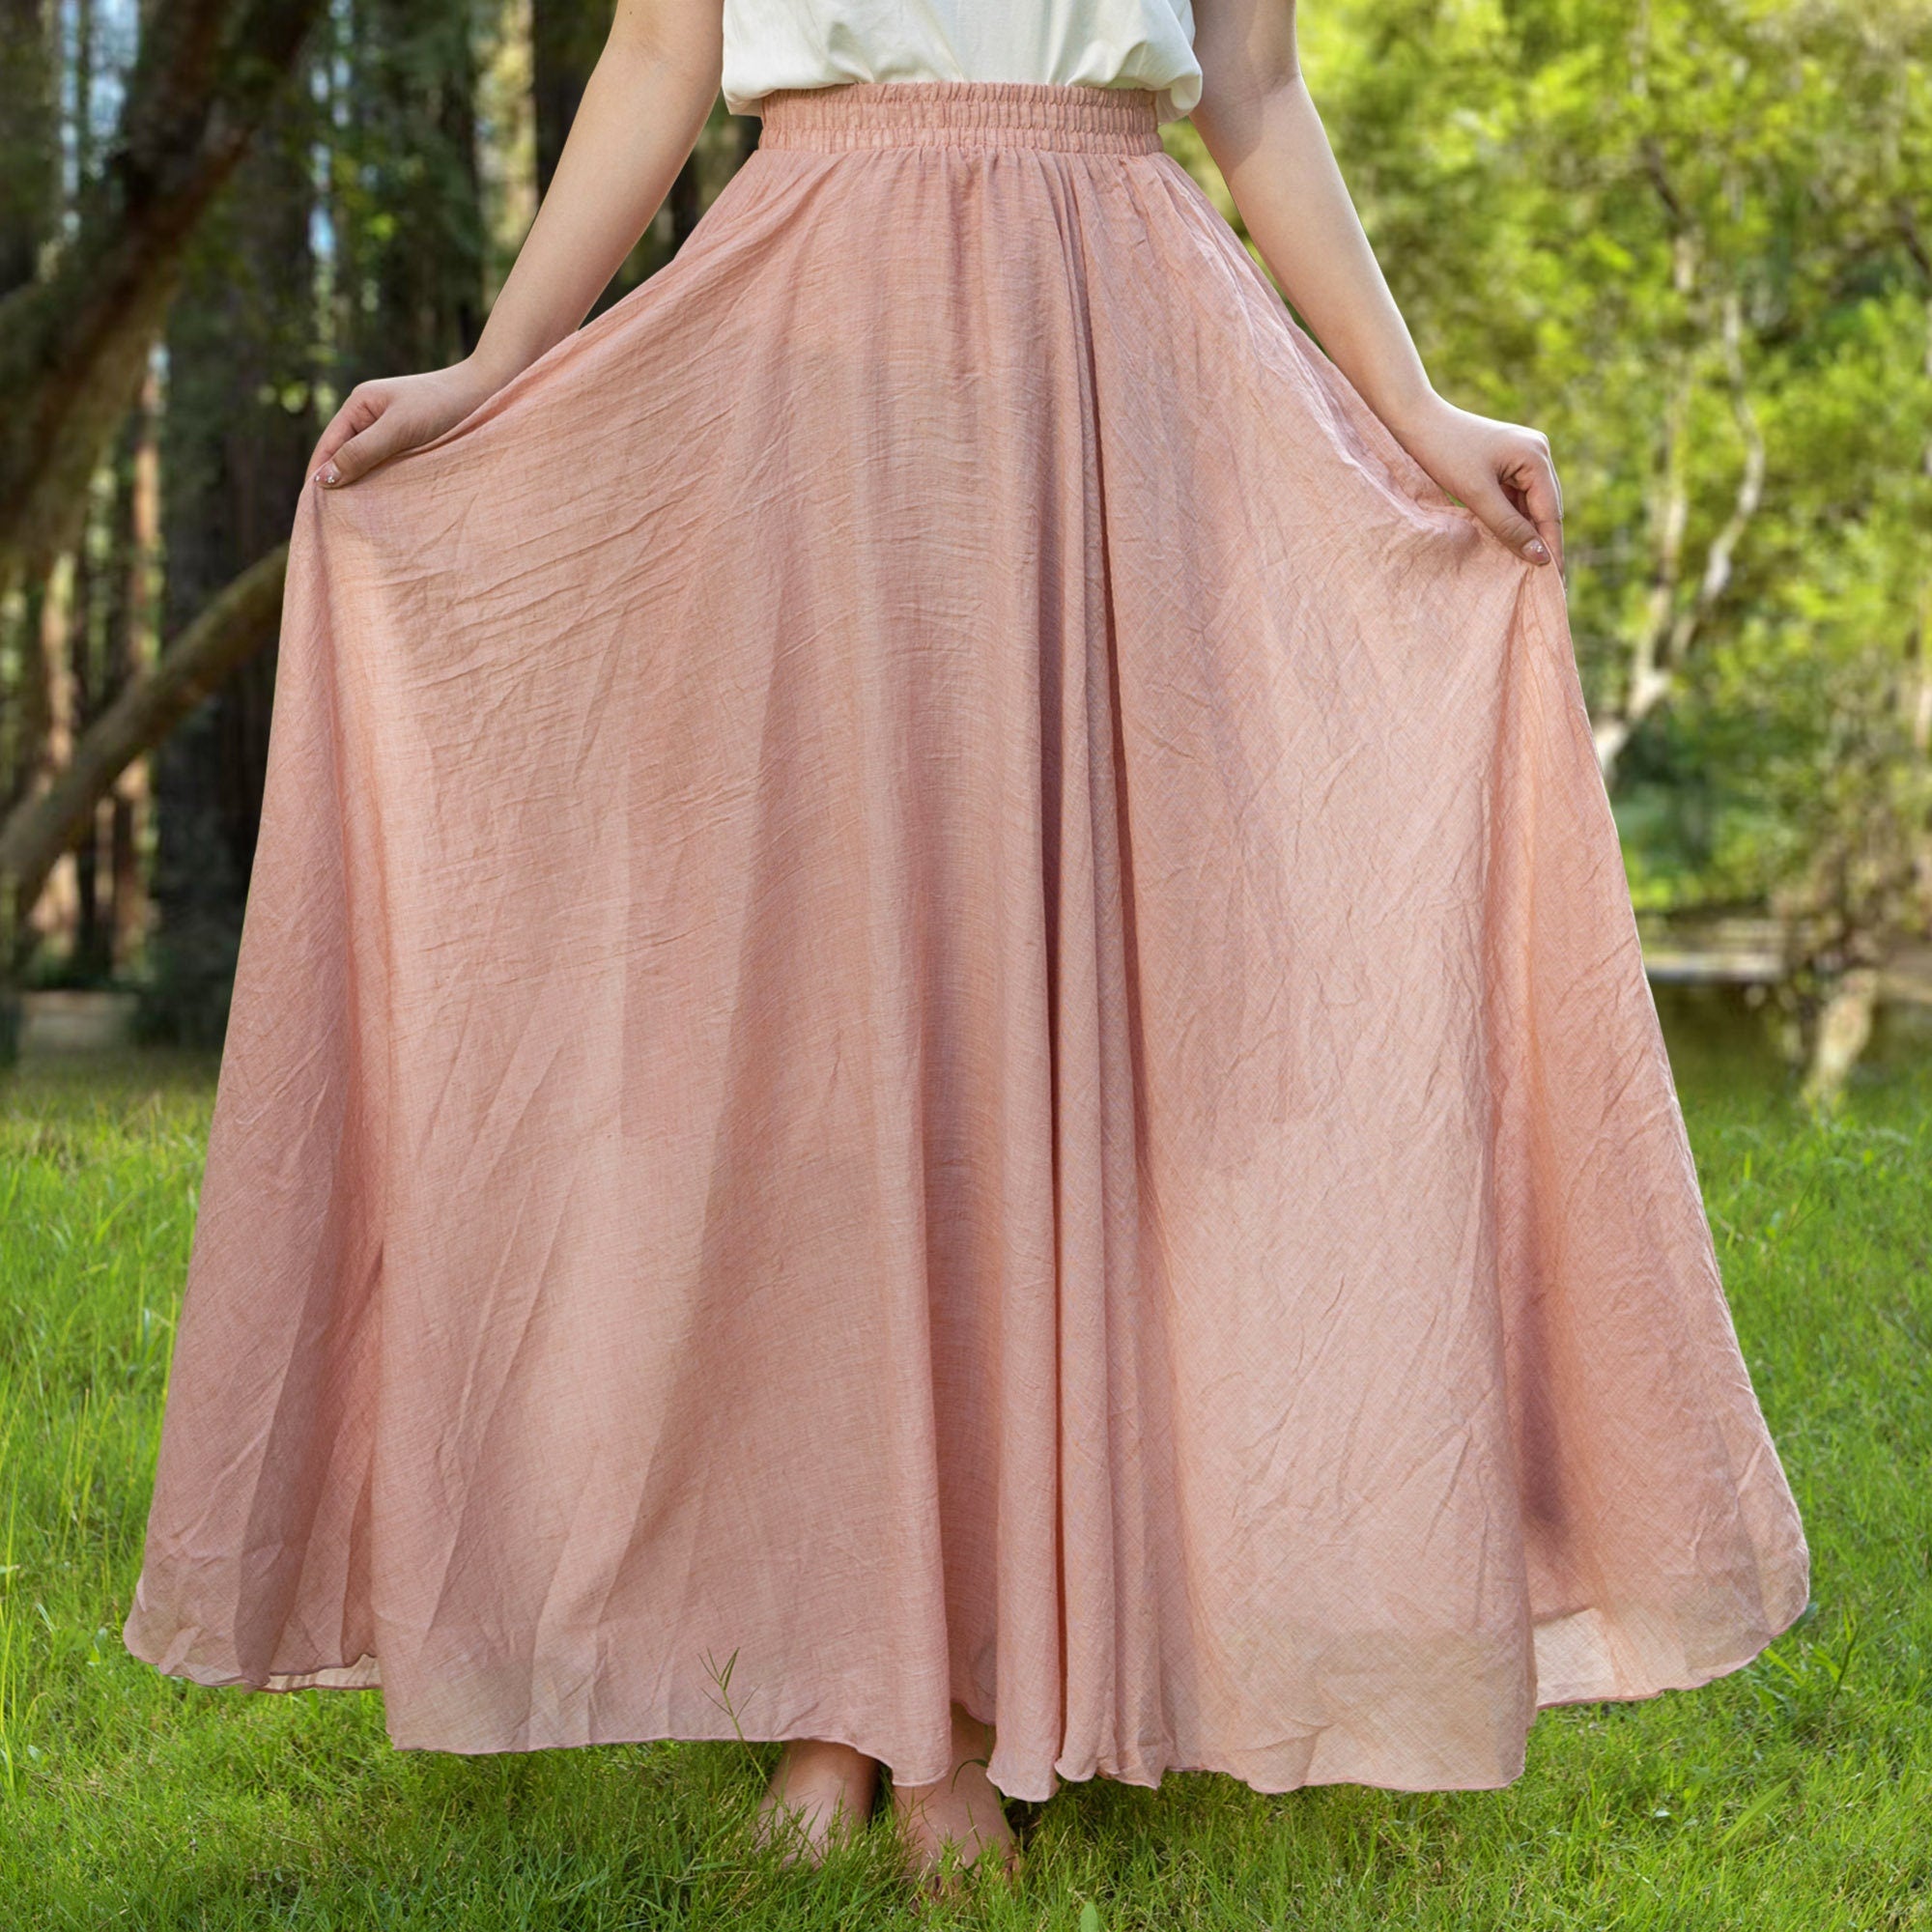 Cotton linen skirt soft and flowing linen skirt travel skirt beach skirt gift for her pink custom waist，Pockets and waist can be customized